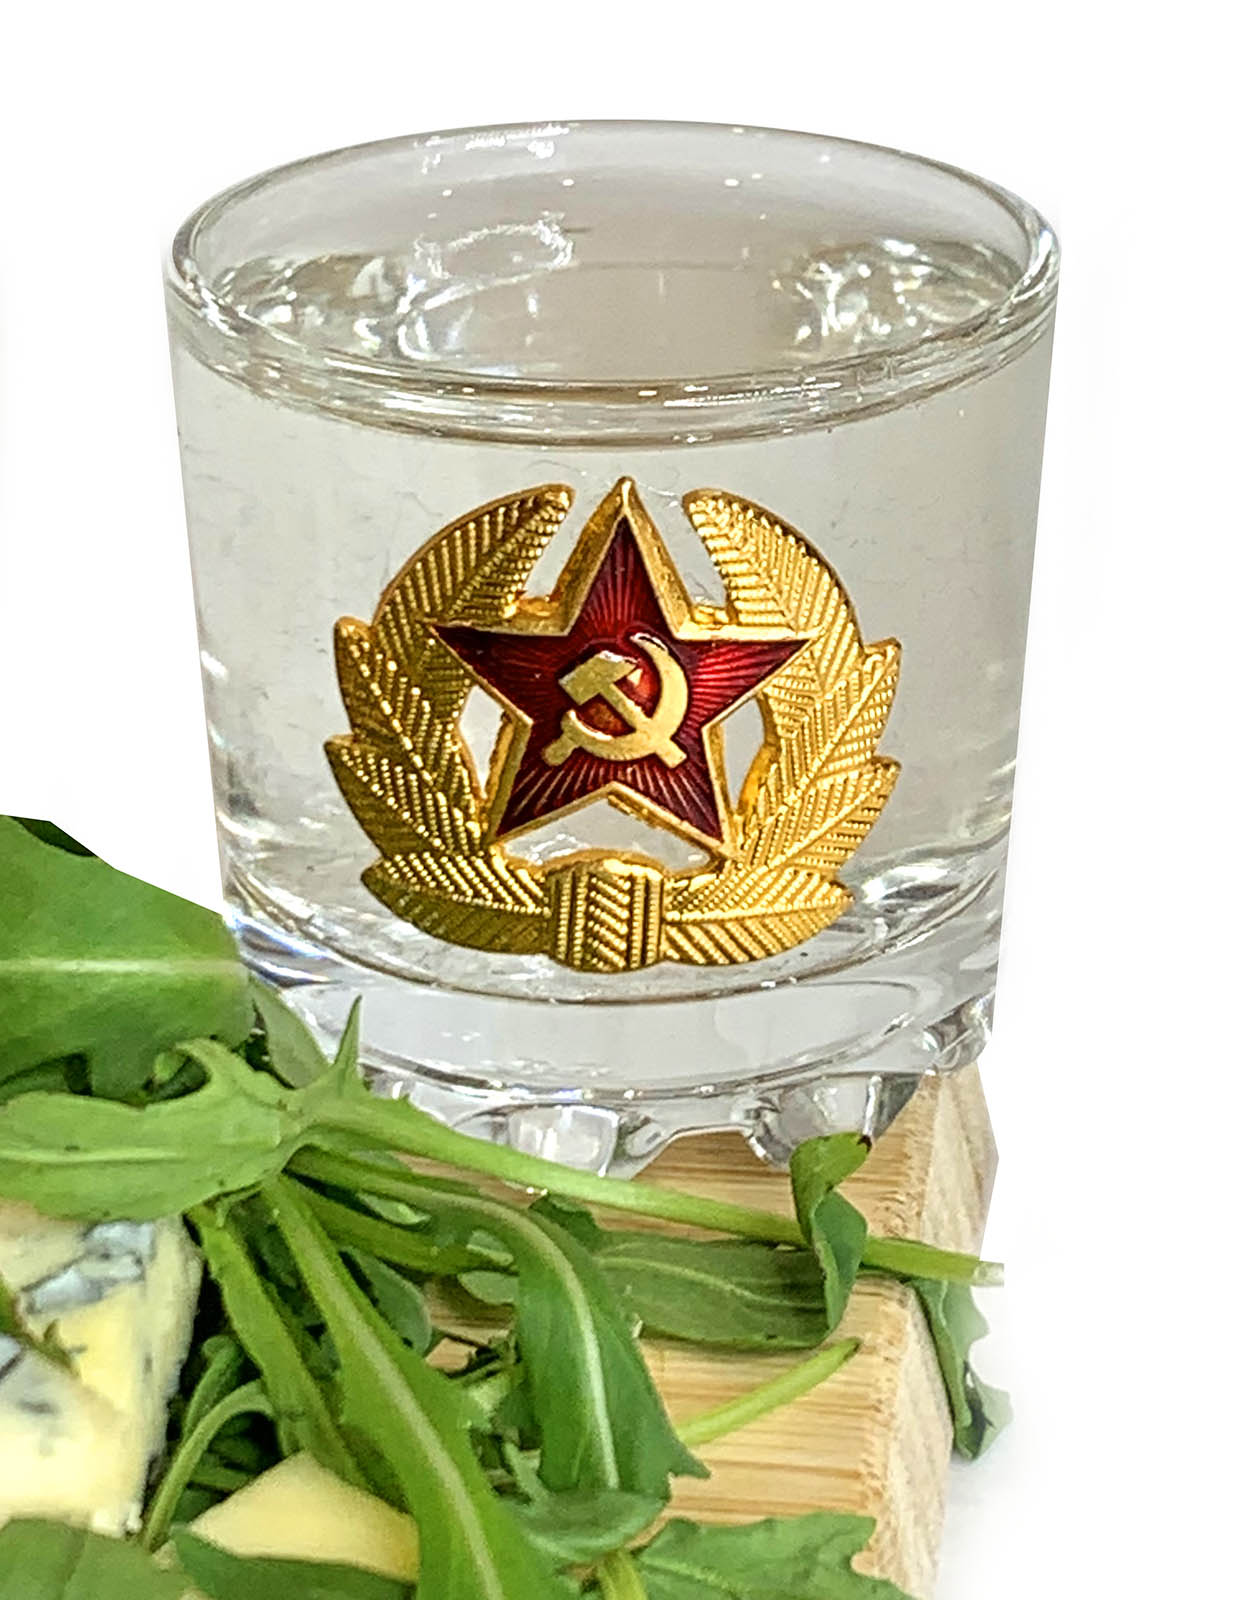 Купить стопки для водки в дизайне СССР